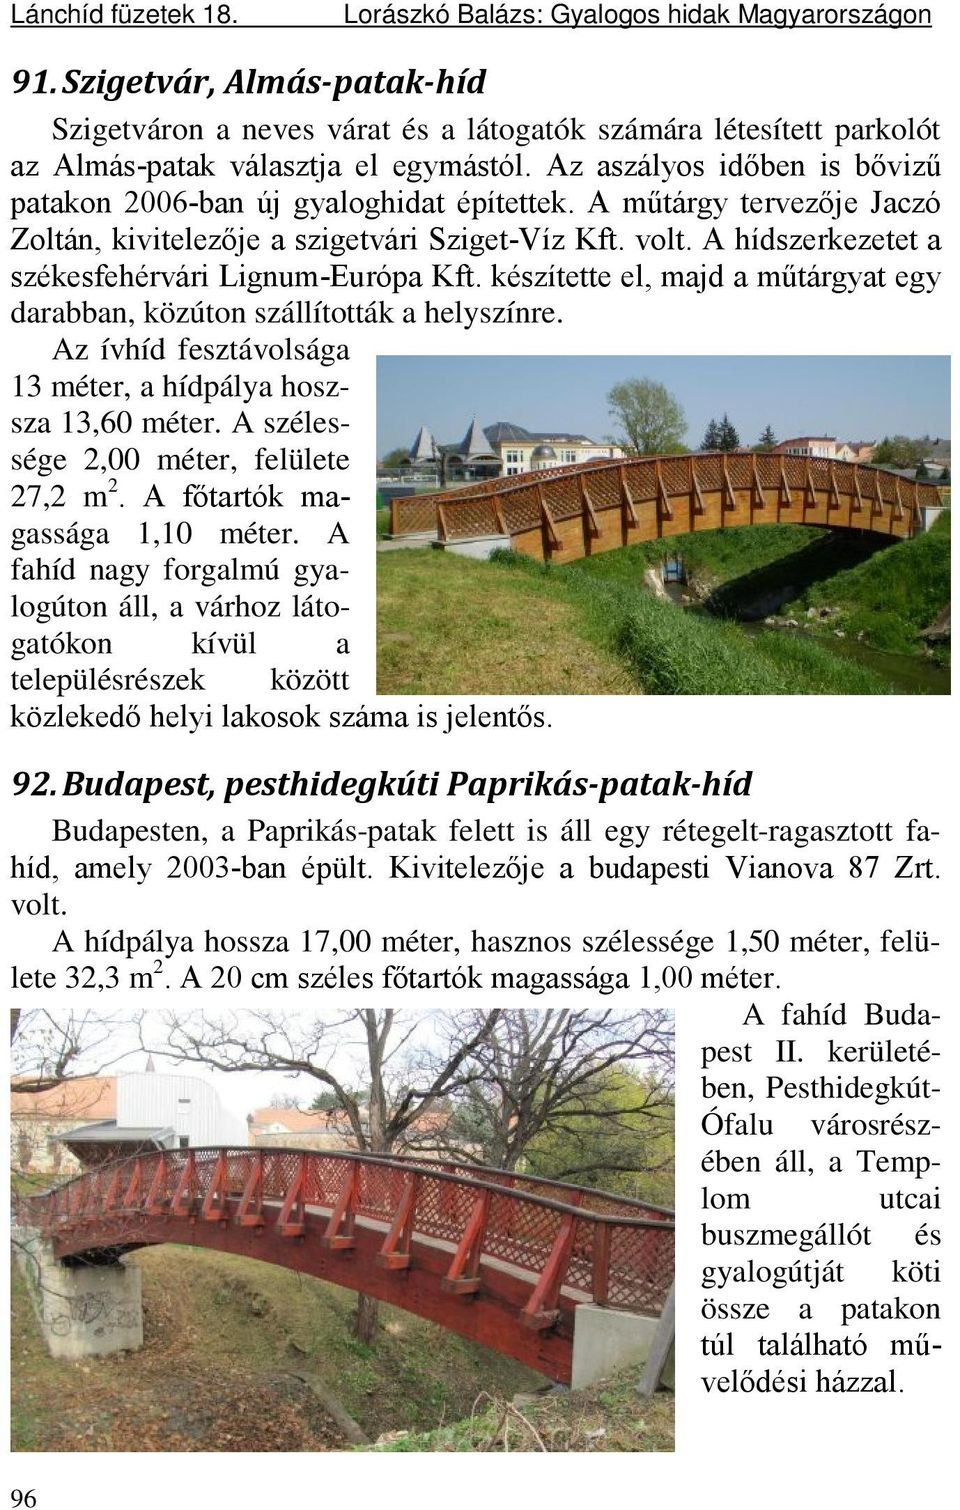 Az aszályos időben is bővizű patakon 2006-ban új gyaloghidat építettek. A műtárgy tervezője Jaczó Zoltán, kivitelezője a szigetvári Sziget-Víz Kft. volt.